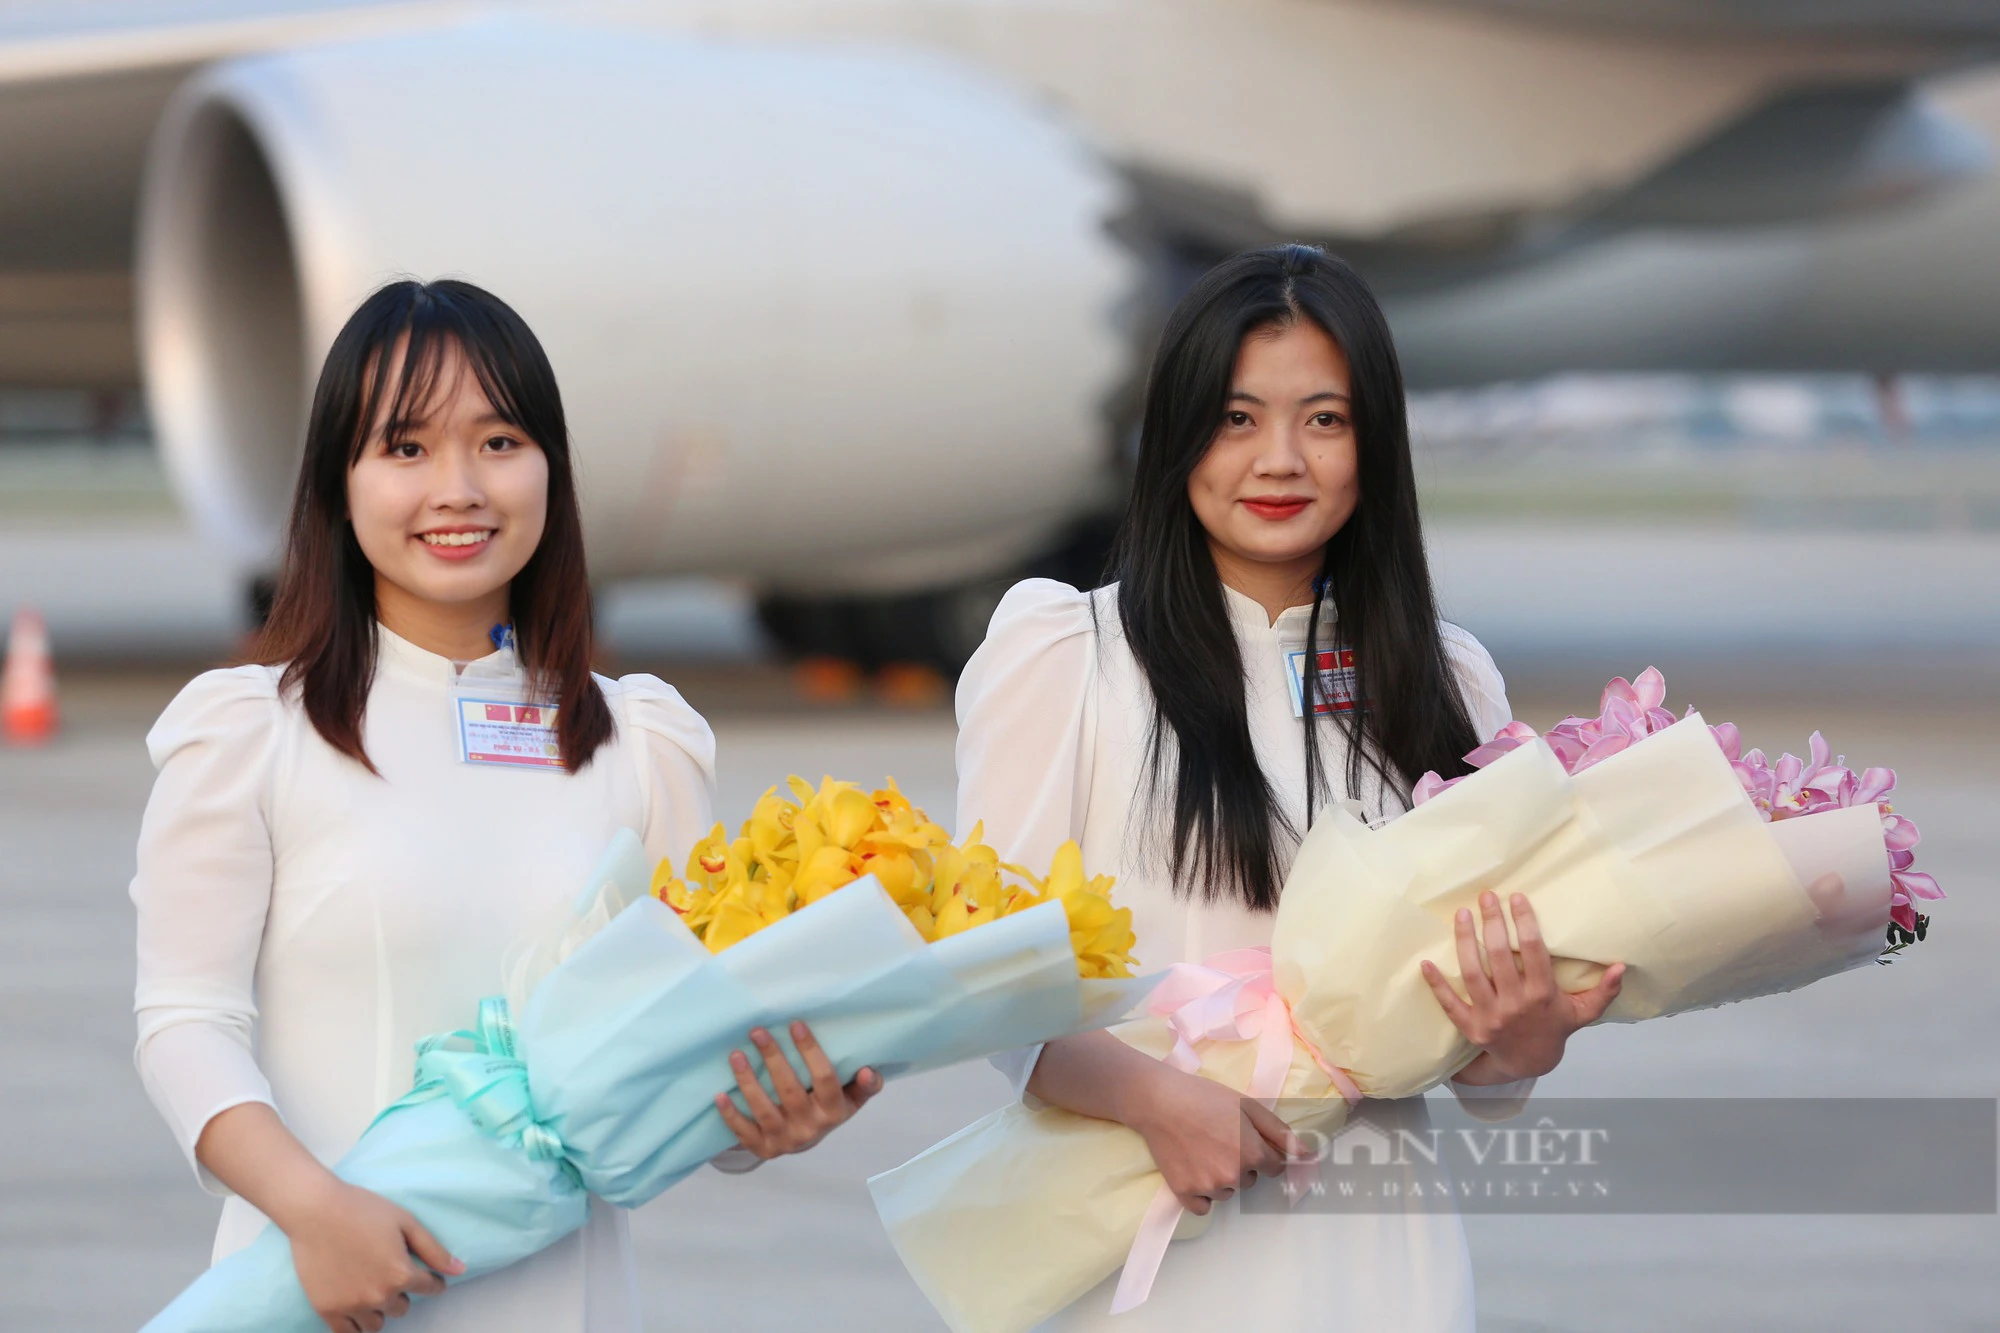 Nhan sắc 2 nữ sinh tặng hoa Tổng bí thư, Chủ tịch nước Trung Quốc Tập Cận Bình và Phu nhân tại Nội Bài - Ảnh 1.